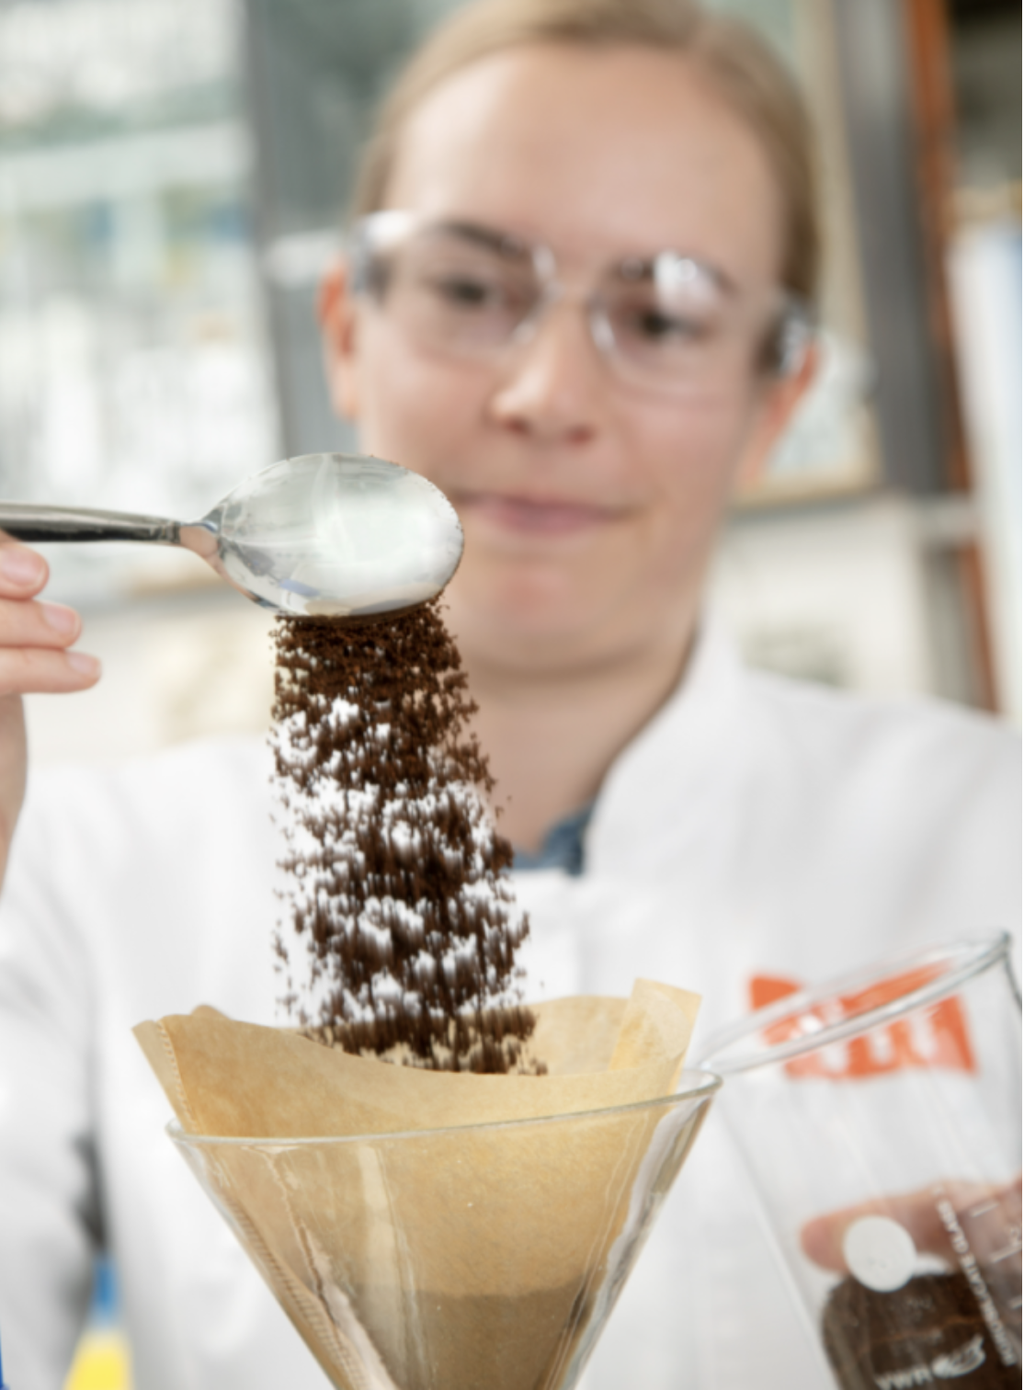 Cientista passa um cafezinho cultivado em laboratório (Imagem: Reprodução/VTT)